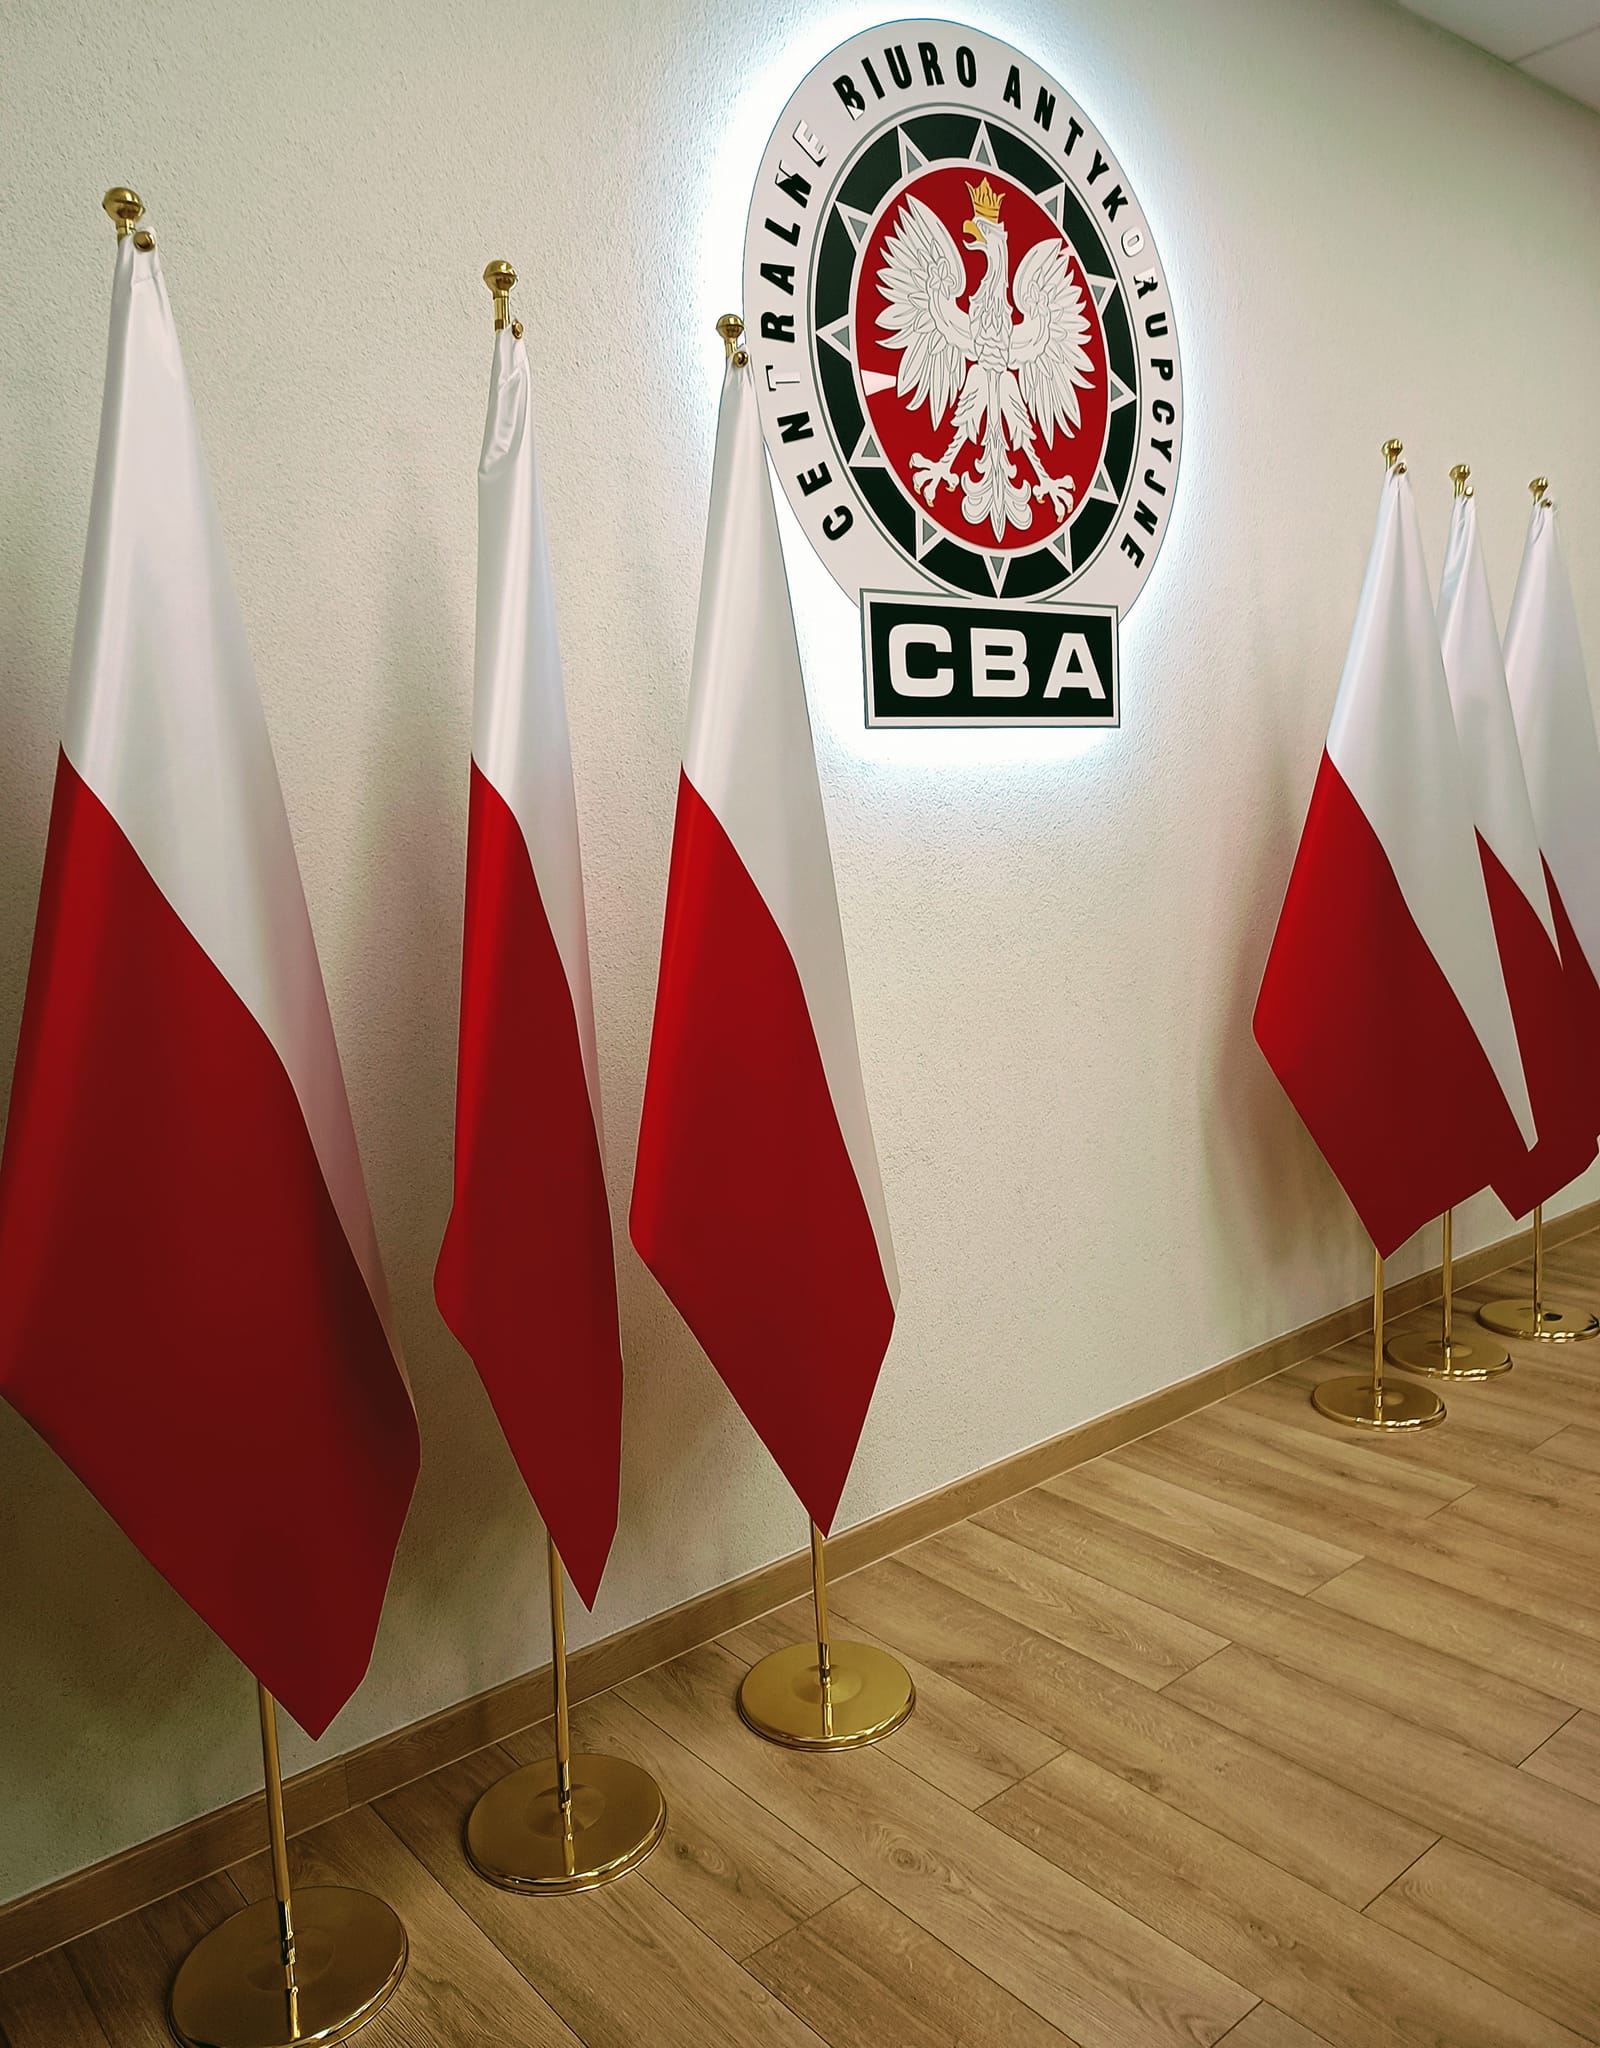 Антикоррупционное бюро - одно из четырех учреждений в Польше, противодействующих коррупции. Фото: facebook.com/CENTRALNEBIUROANTYKORUPCYJNE